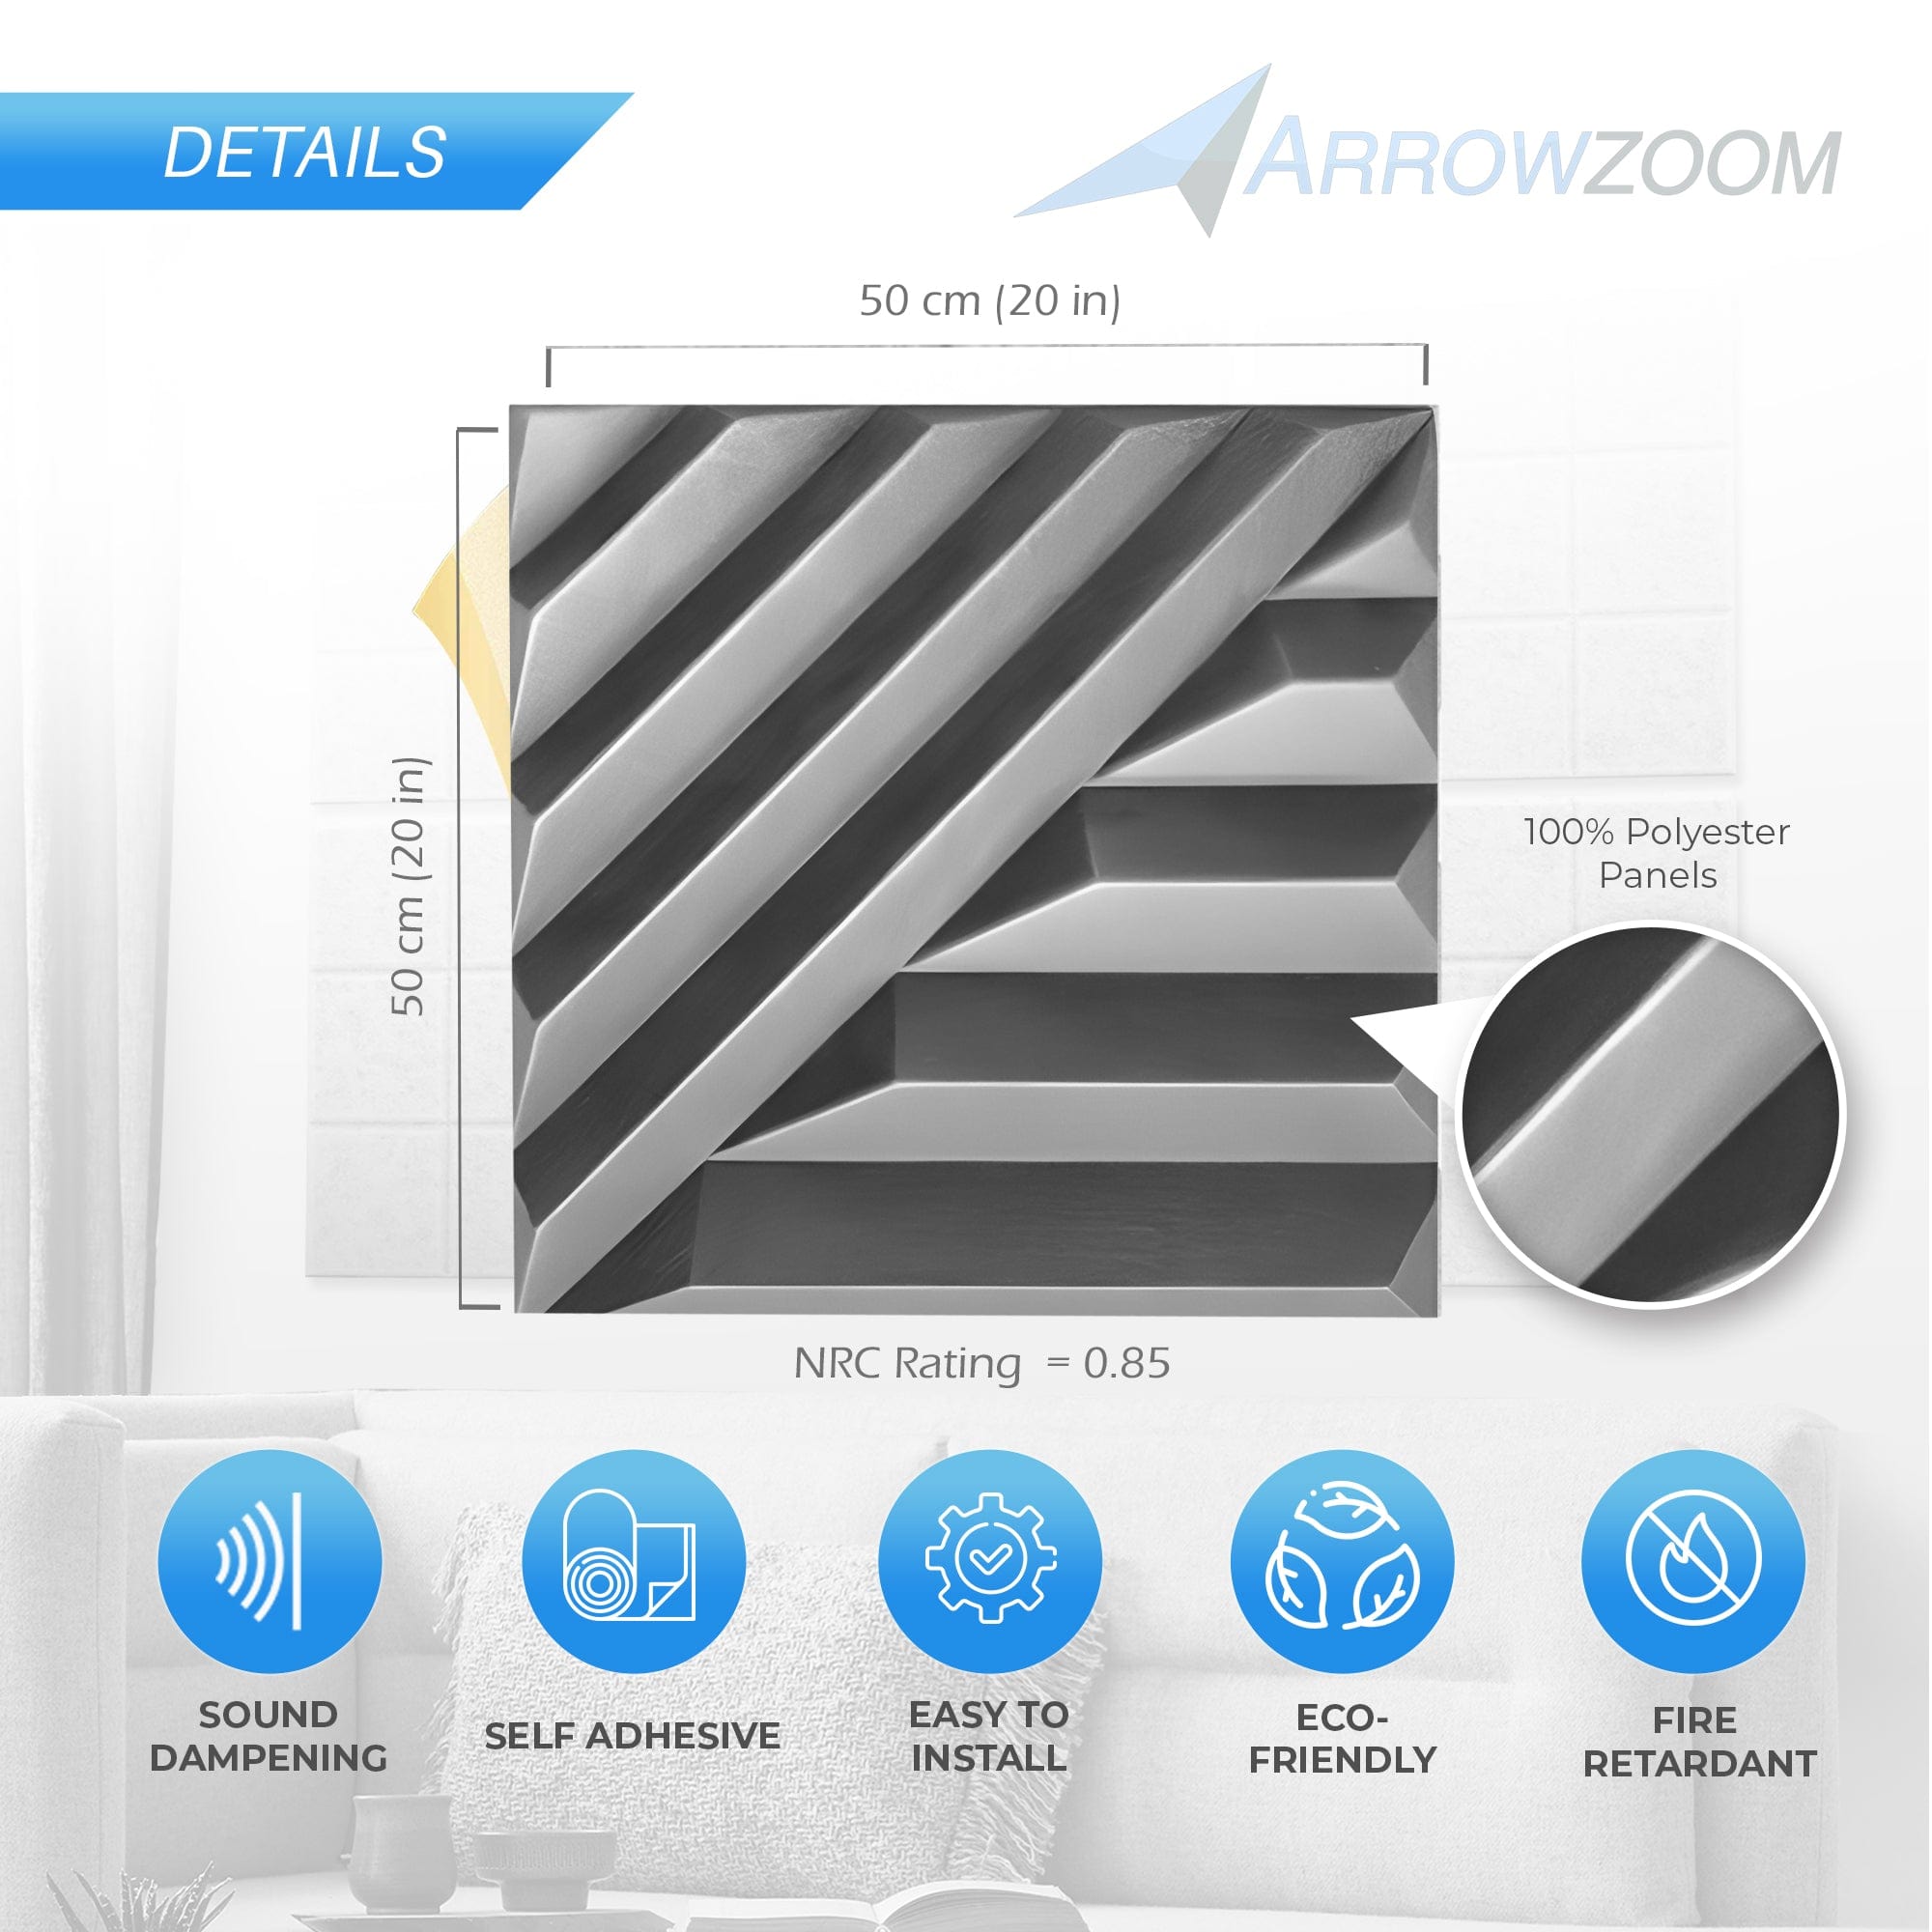 Arrowzoom Solid Wave 3D Polyester Felt Art Panels - KK1426